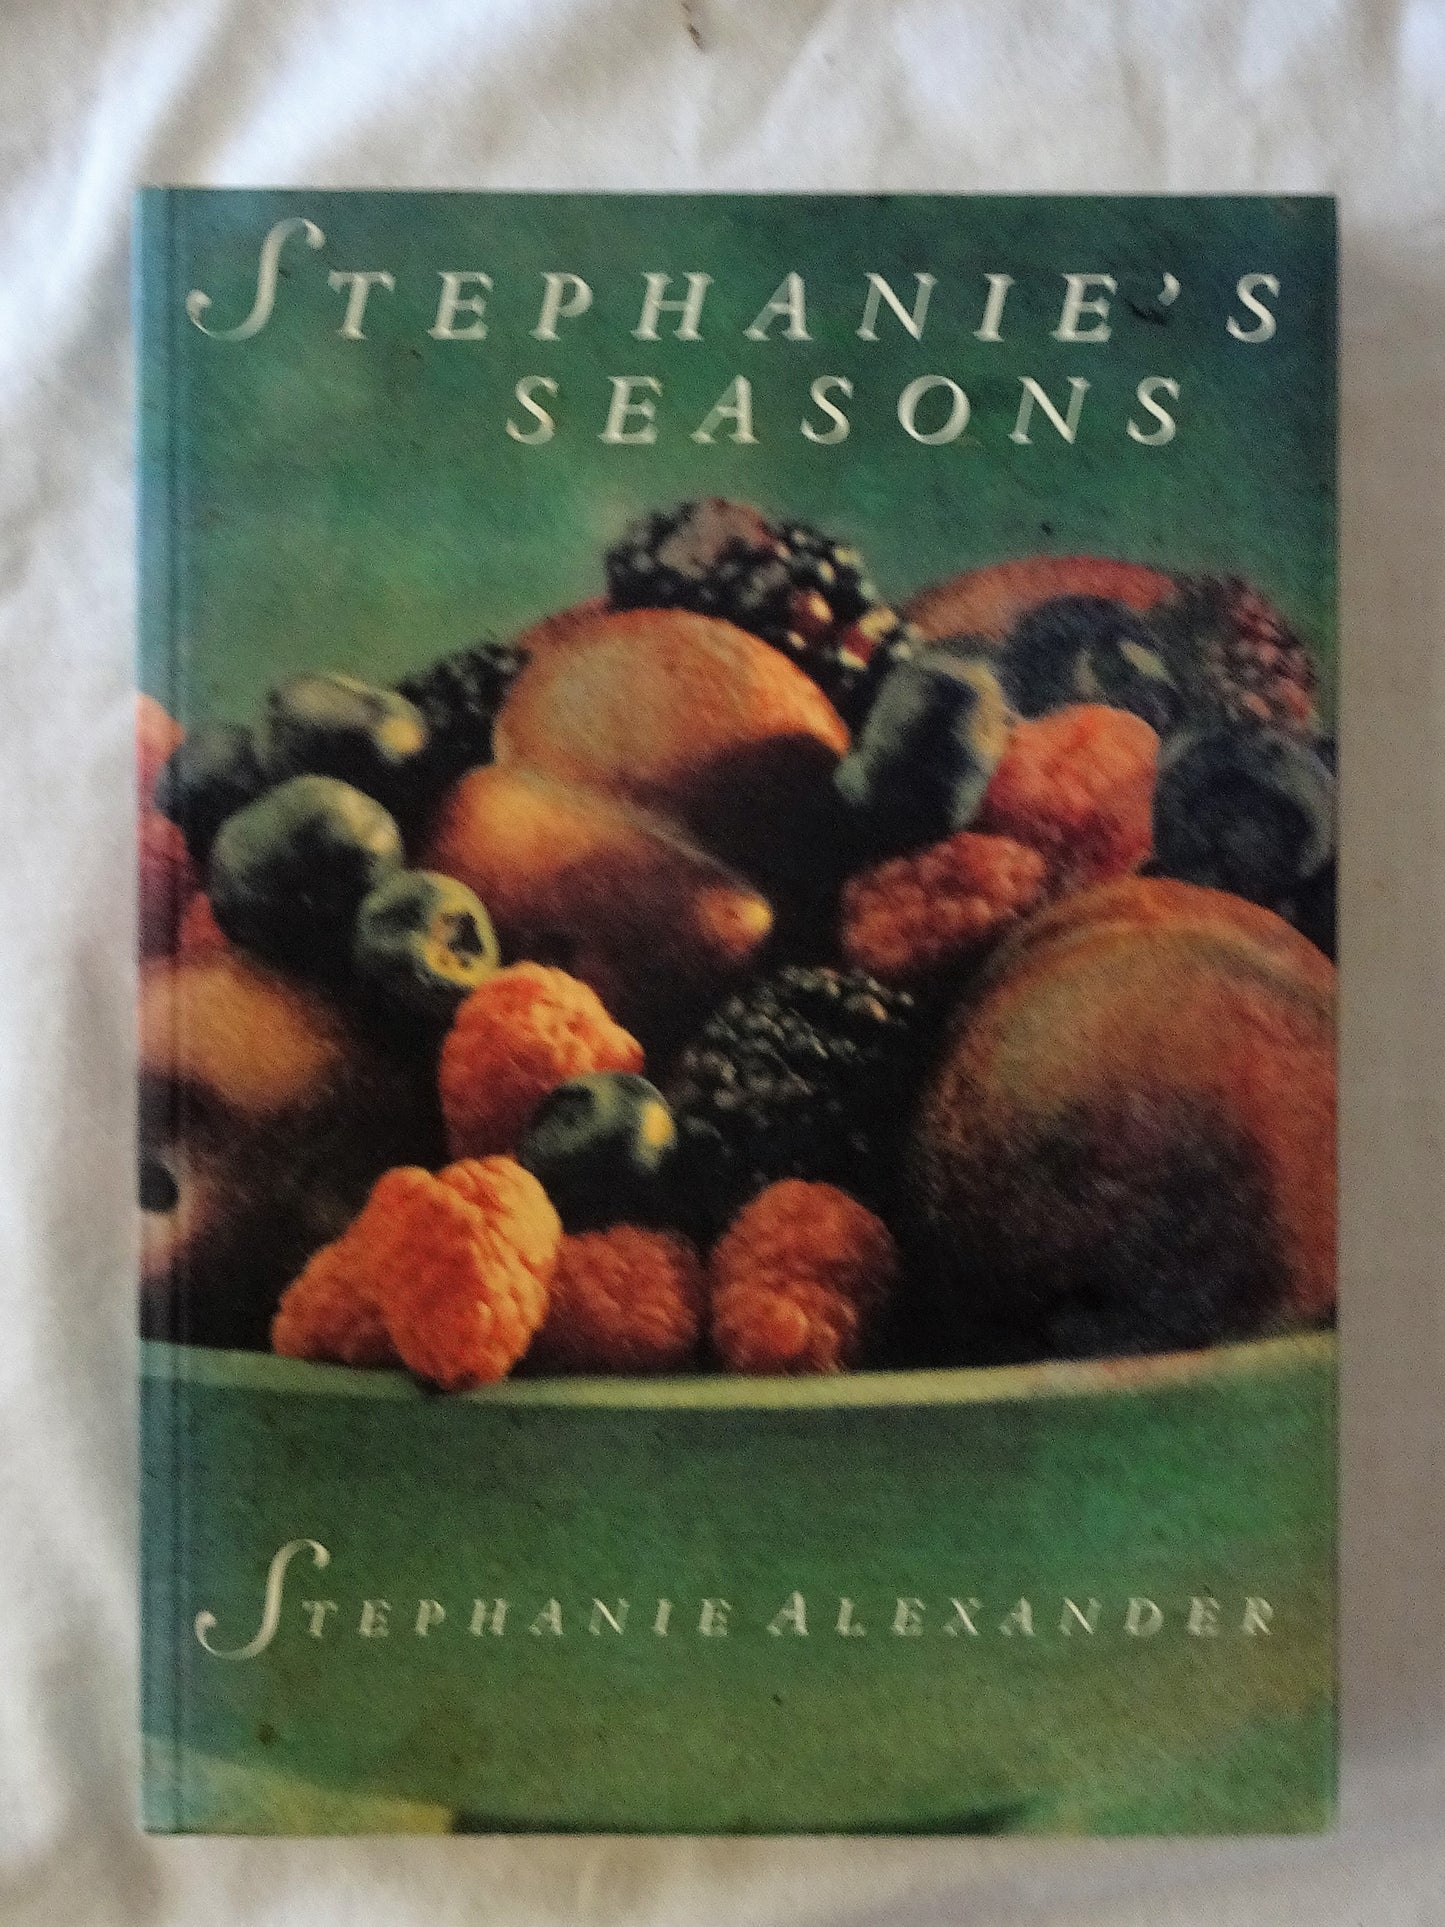 Stephanie's Seasons by Stephanie Alexander